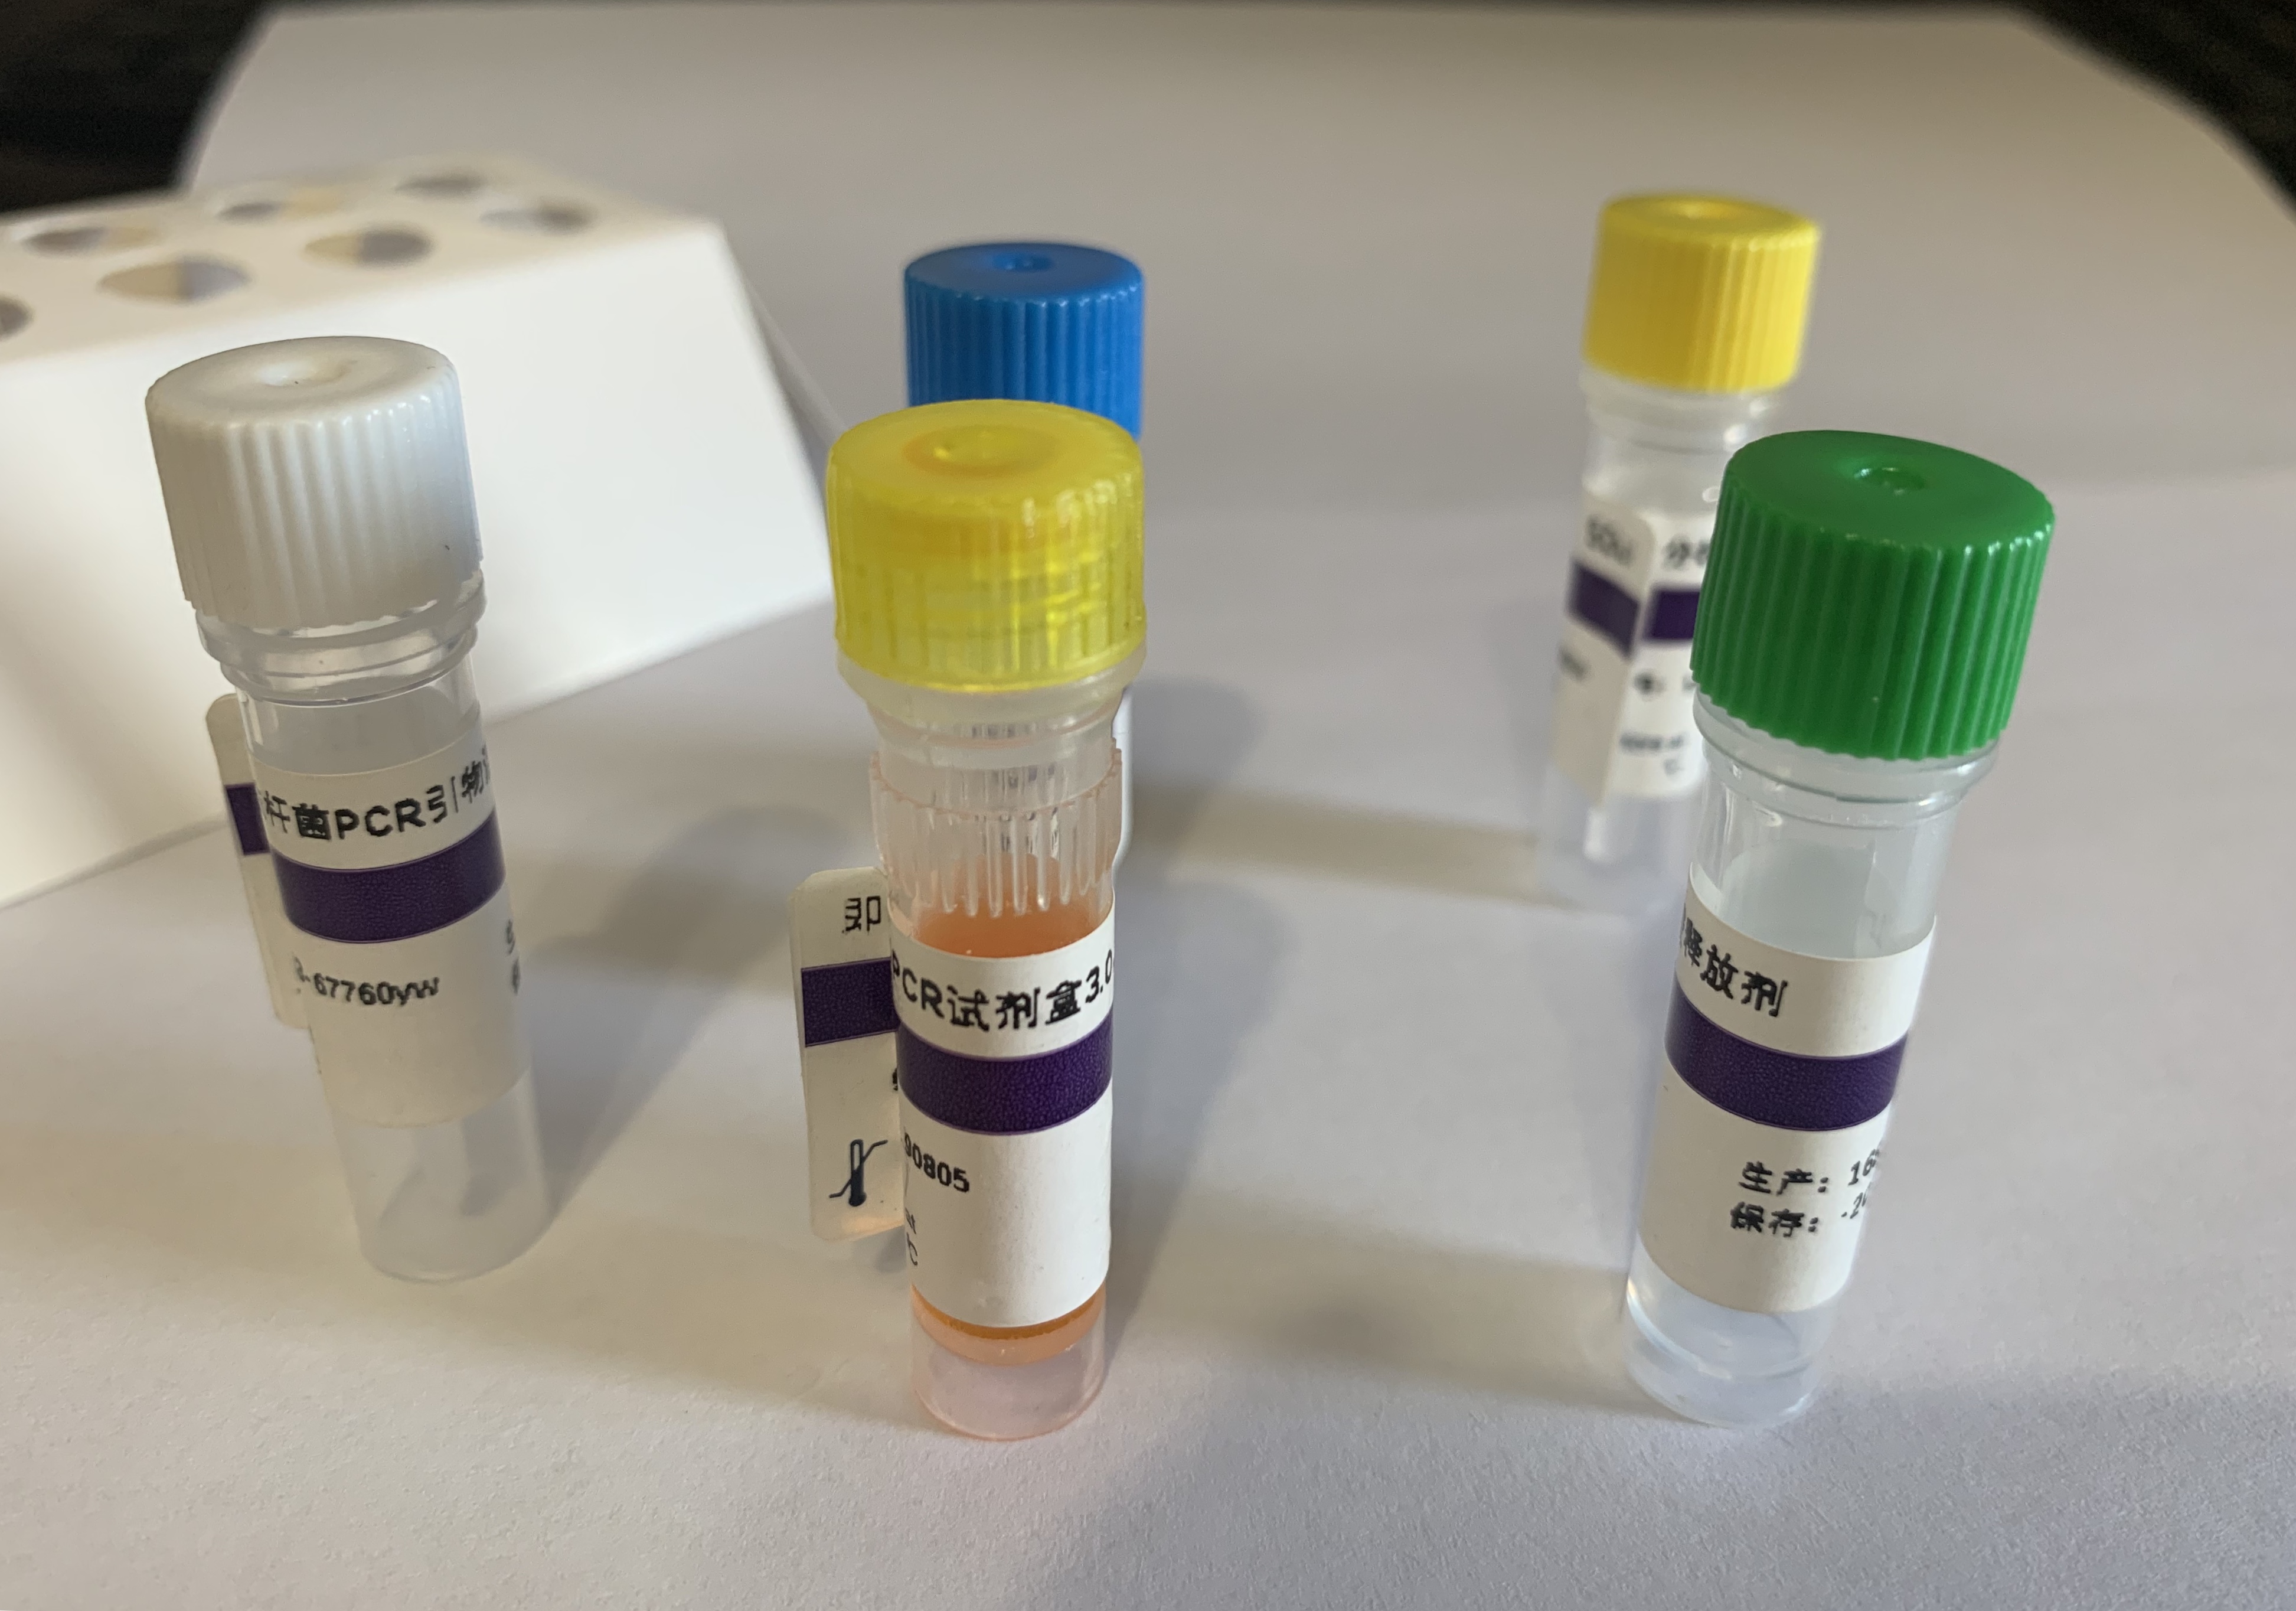 犬腺体病毒1型（犬传染性肝炎病毒）PCR试剂盒